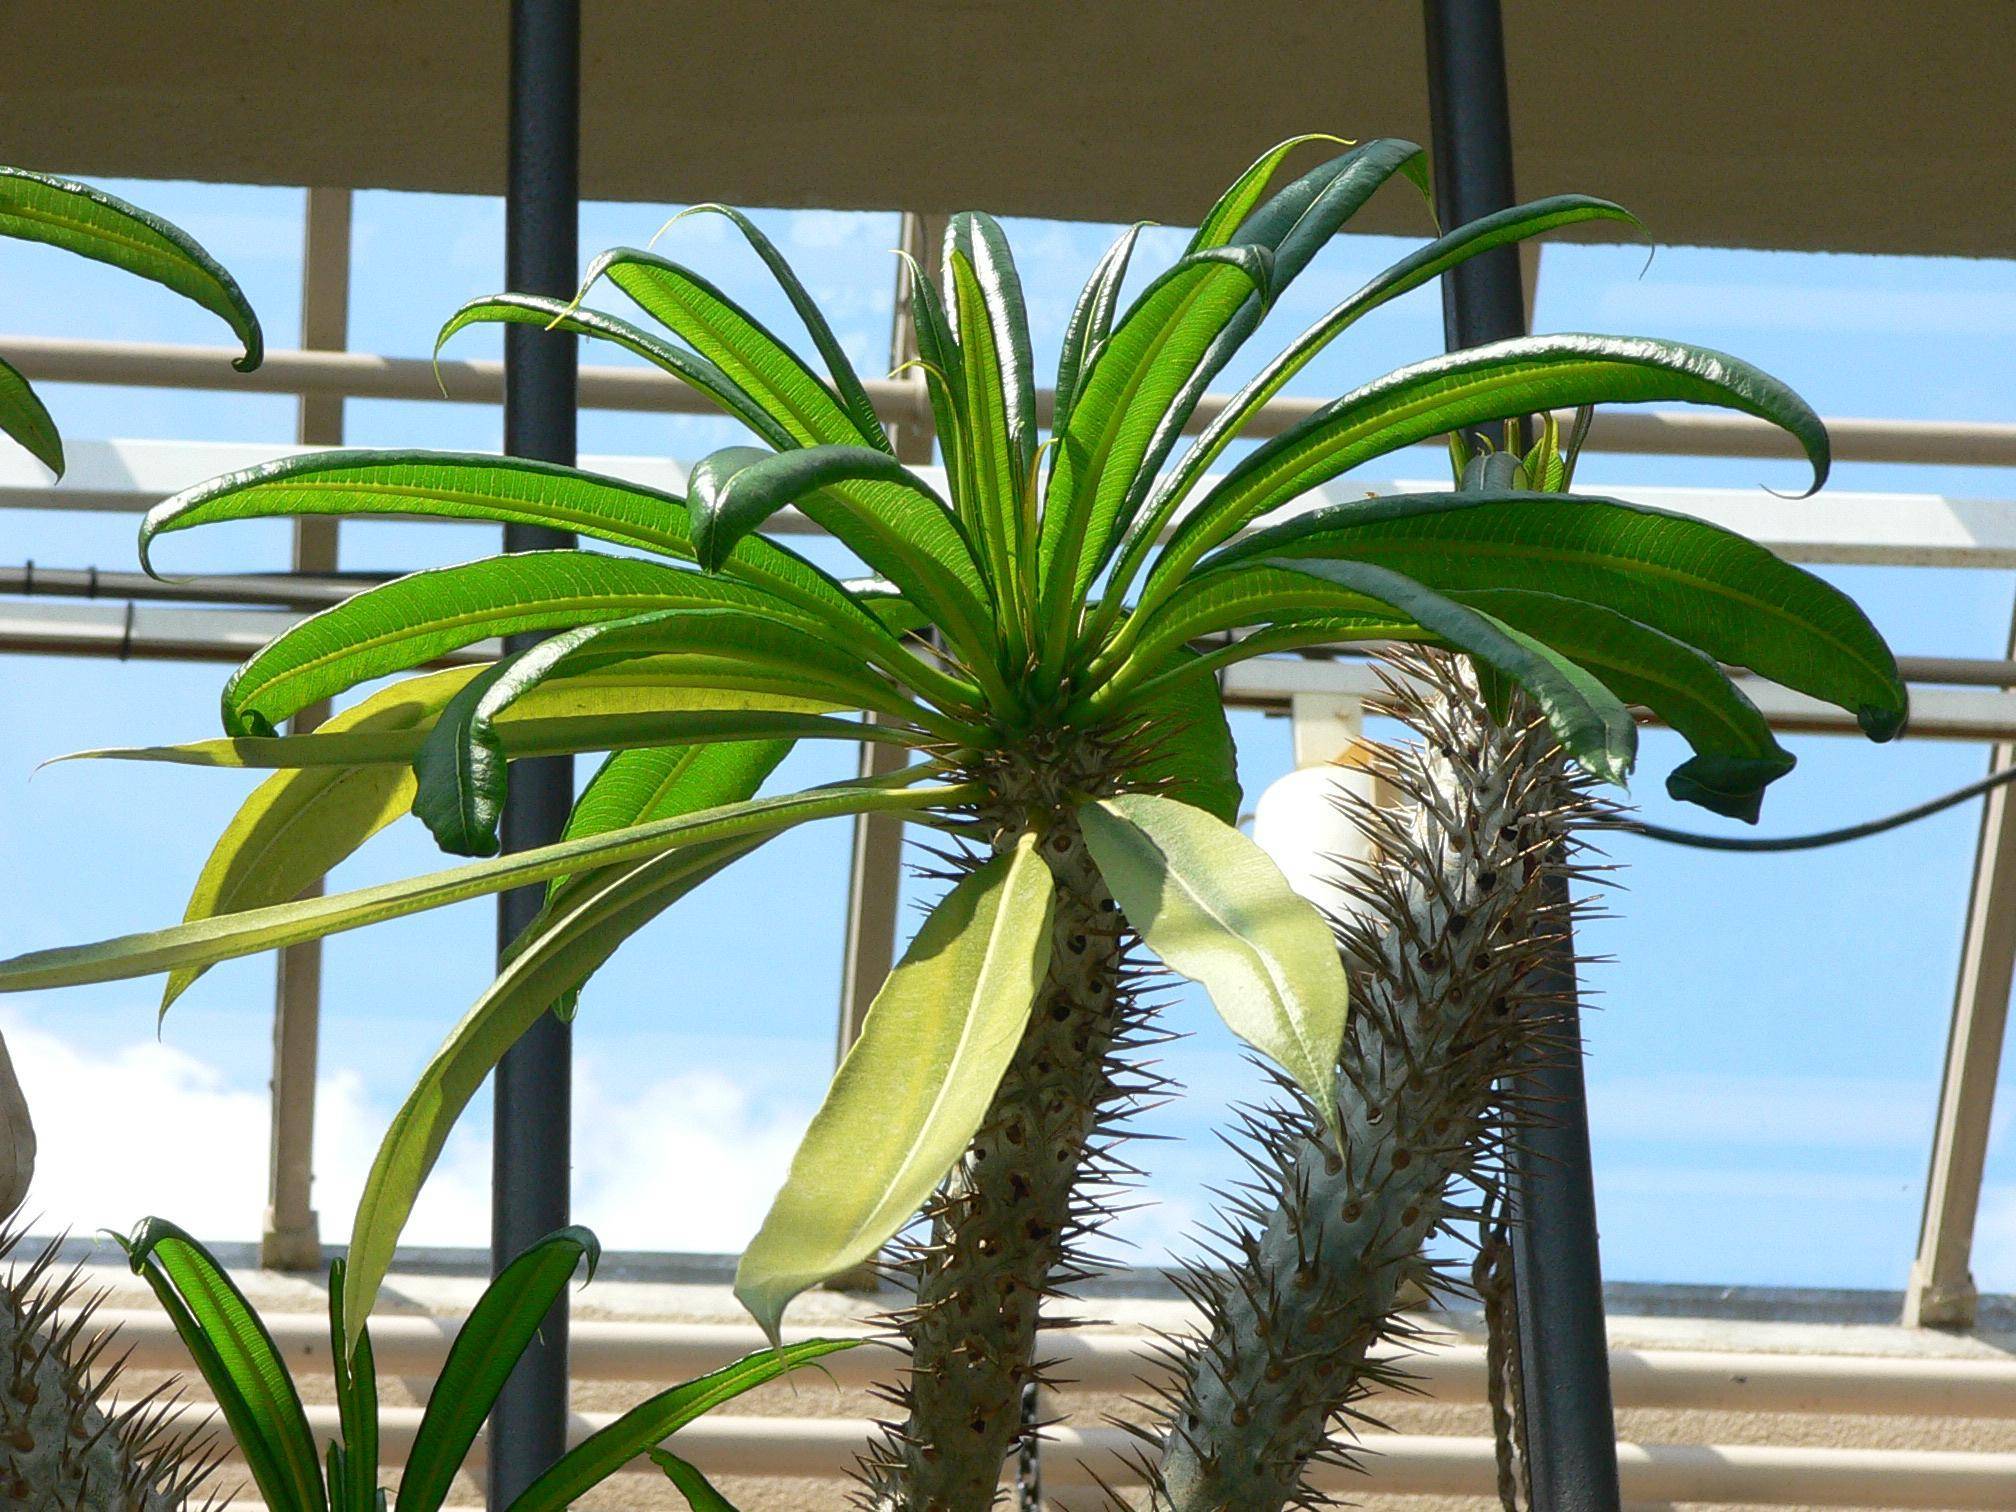 Цветок пахиподиум или мадагаскарская пальма - уход, фото и размножение